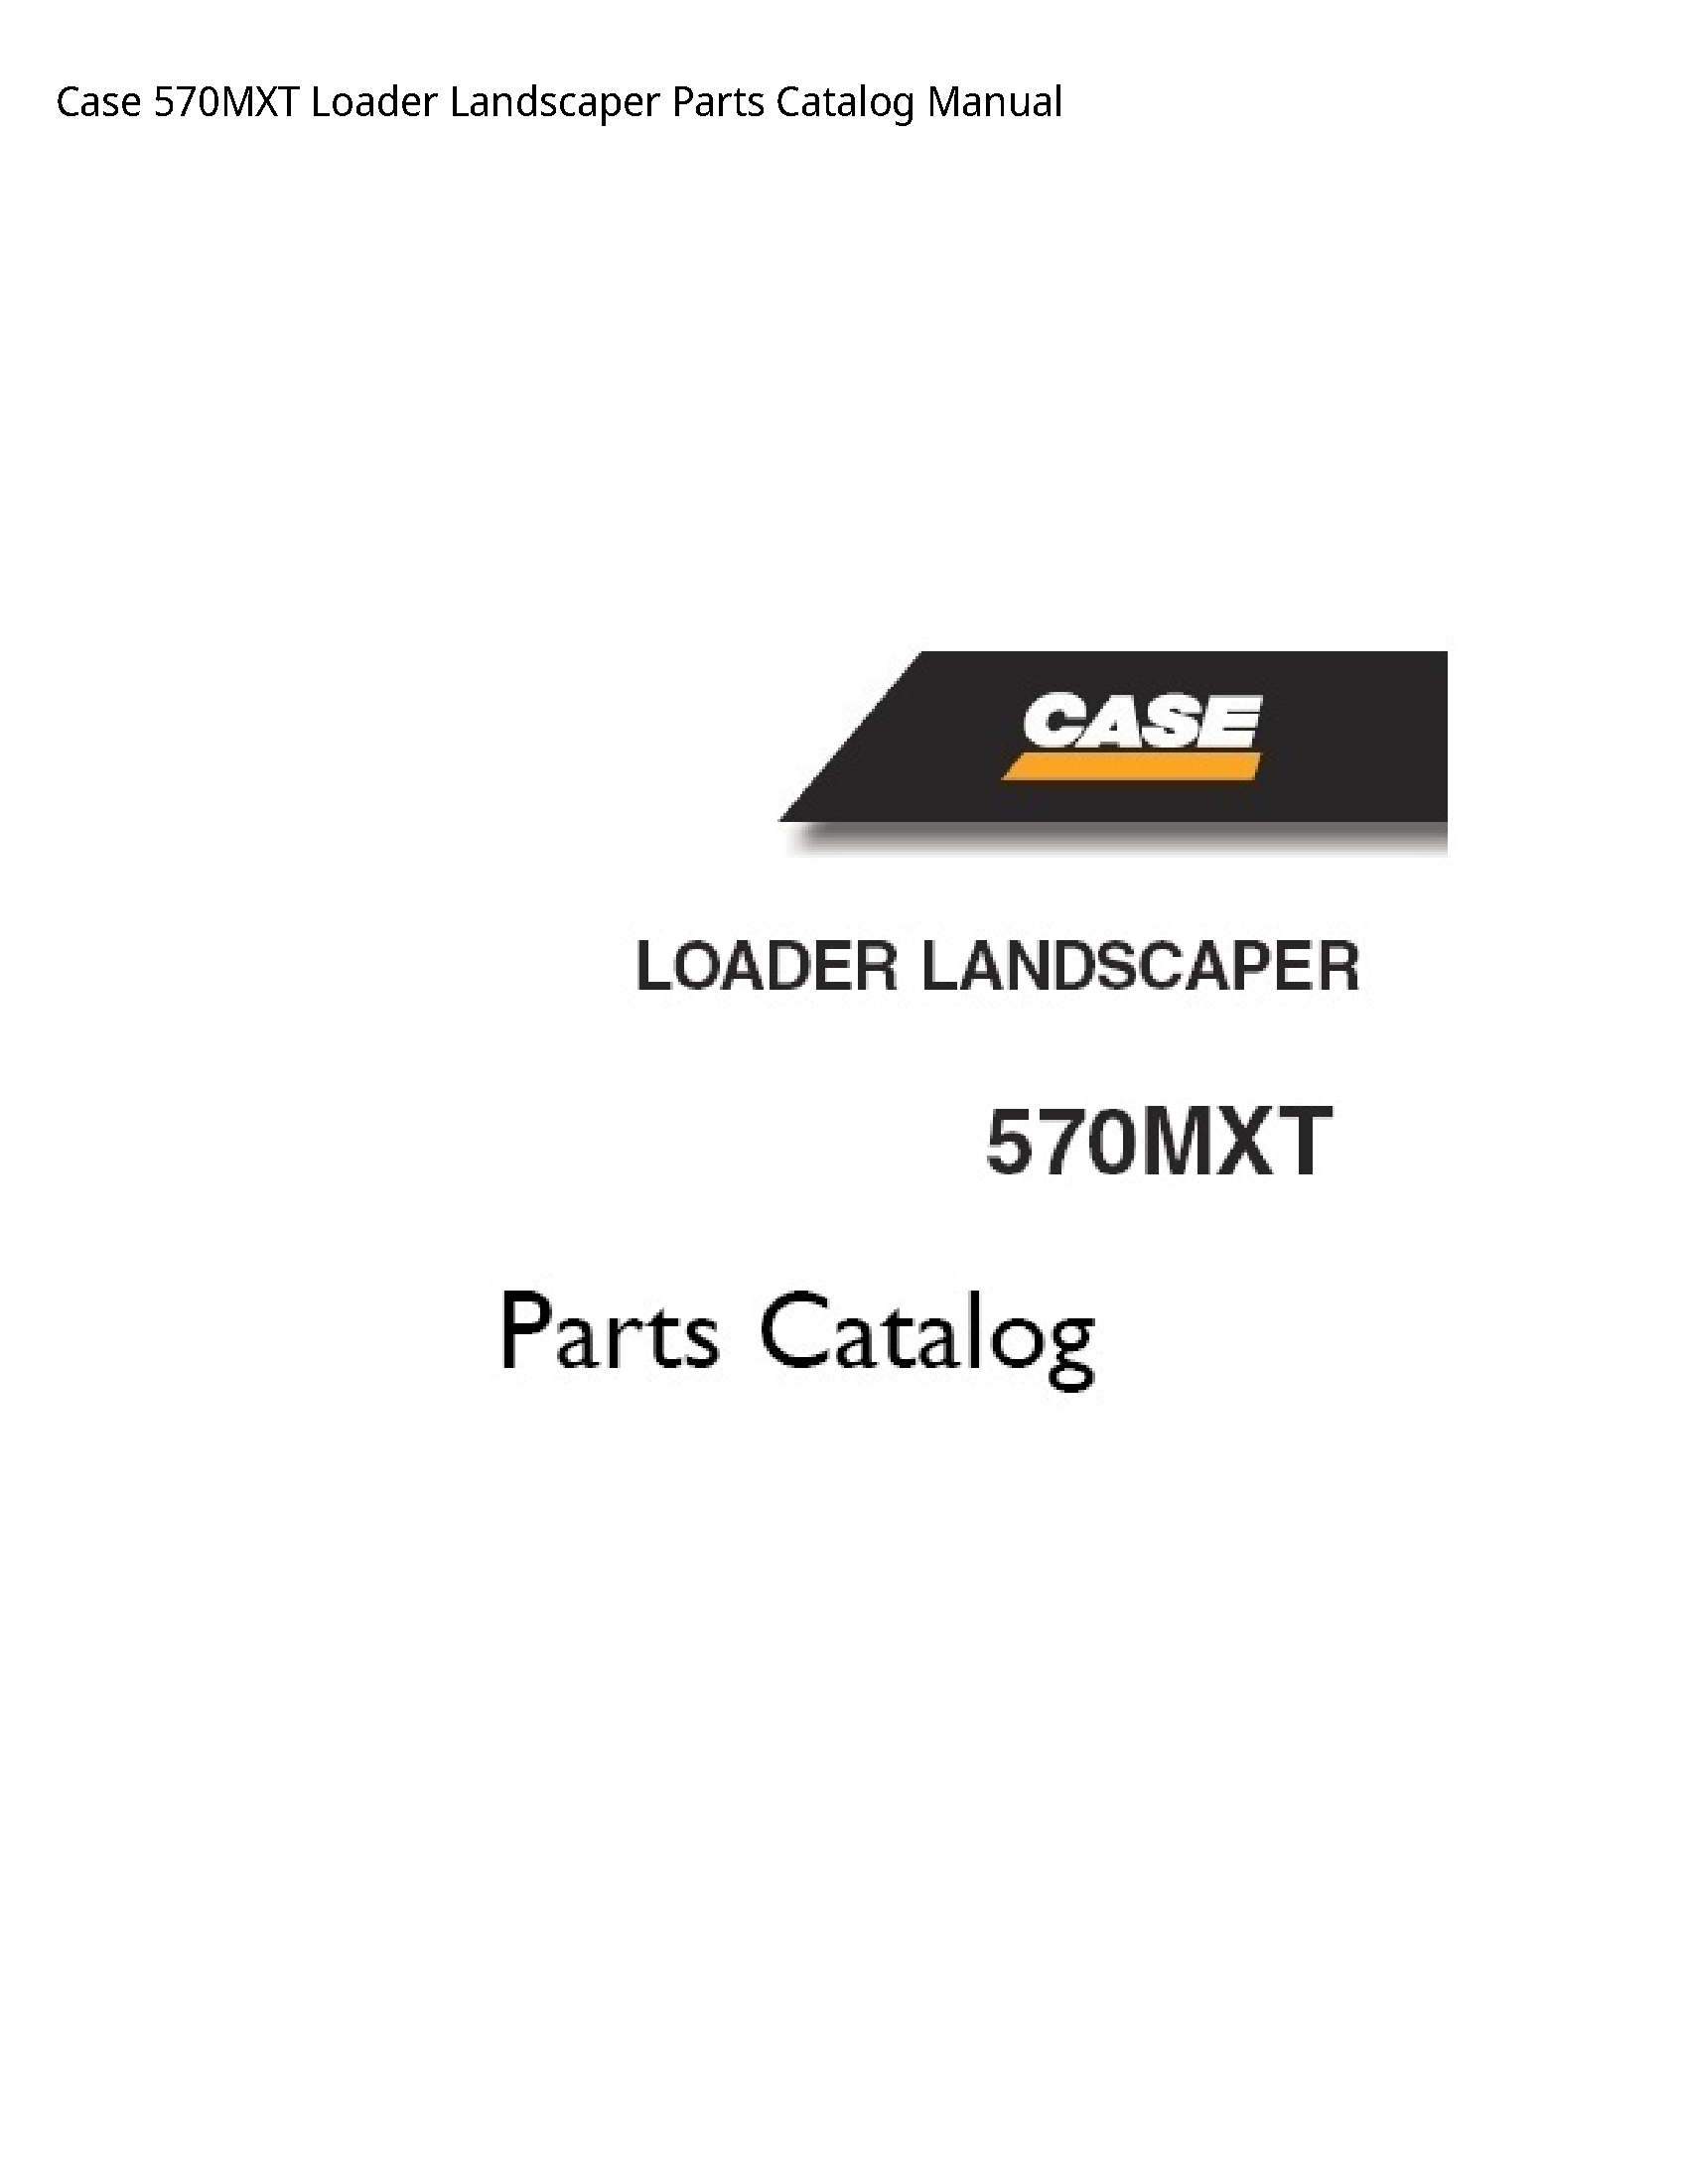 Case/Case IH 570MXT Loader Landscaper Parts Catalog manual